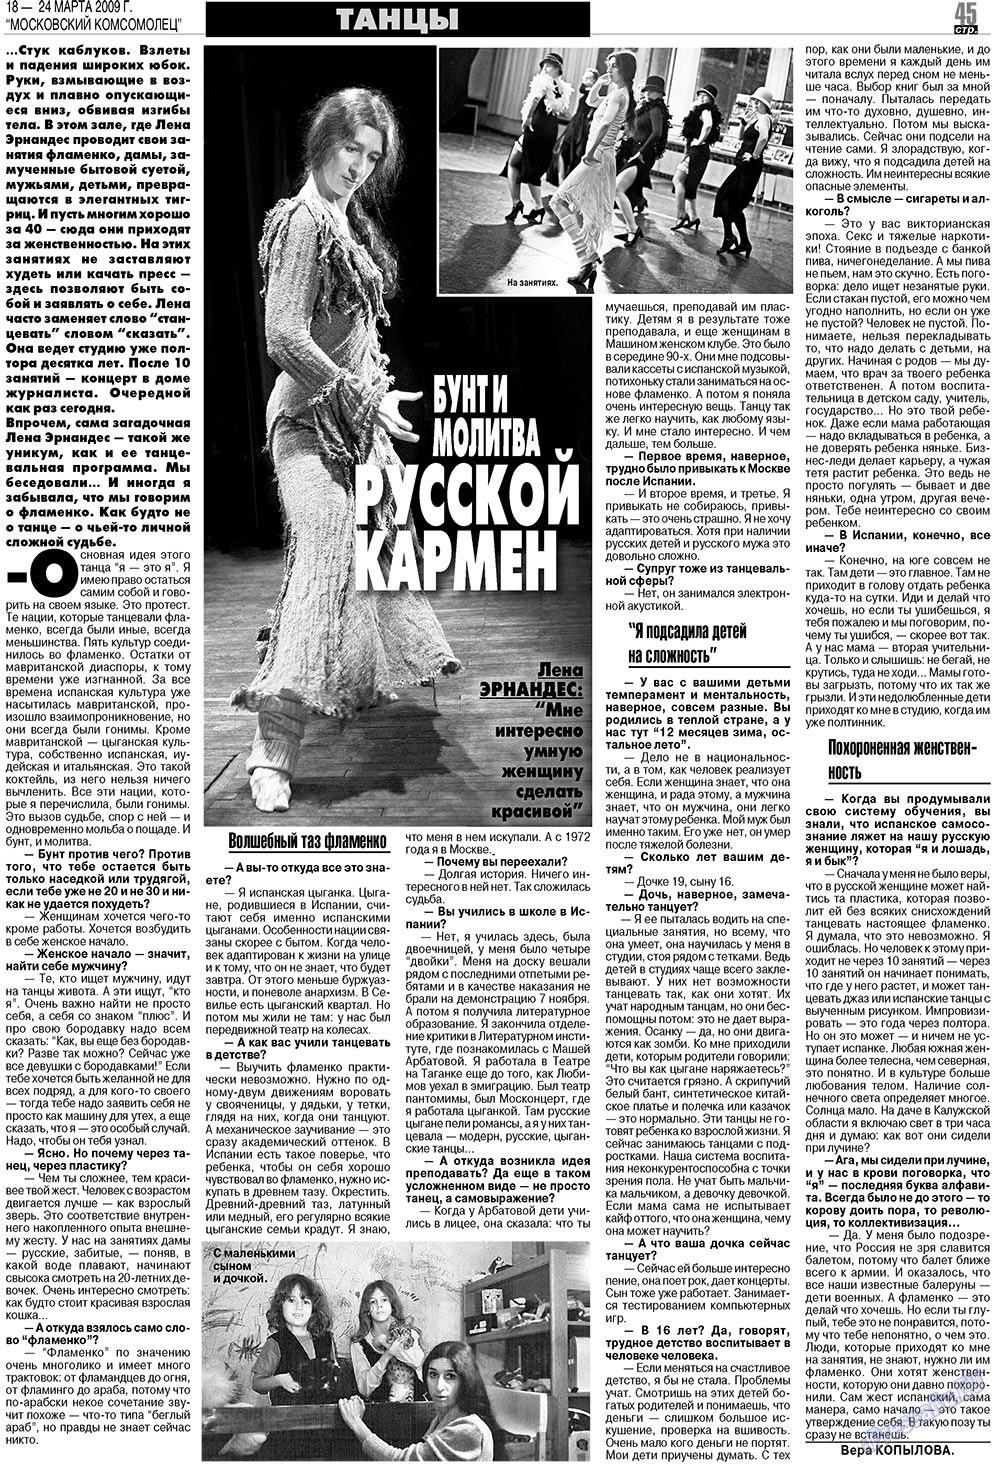 МК Испания, газета. 2009 №12 стр.45